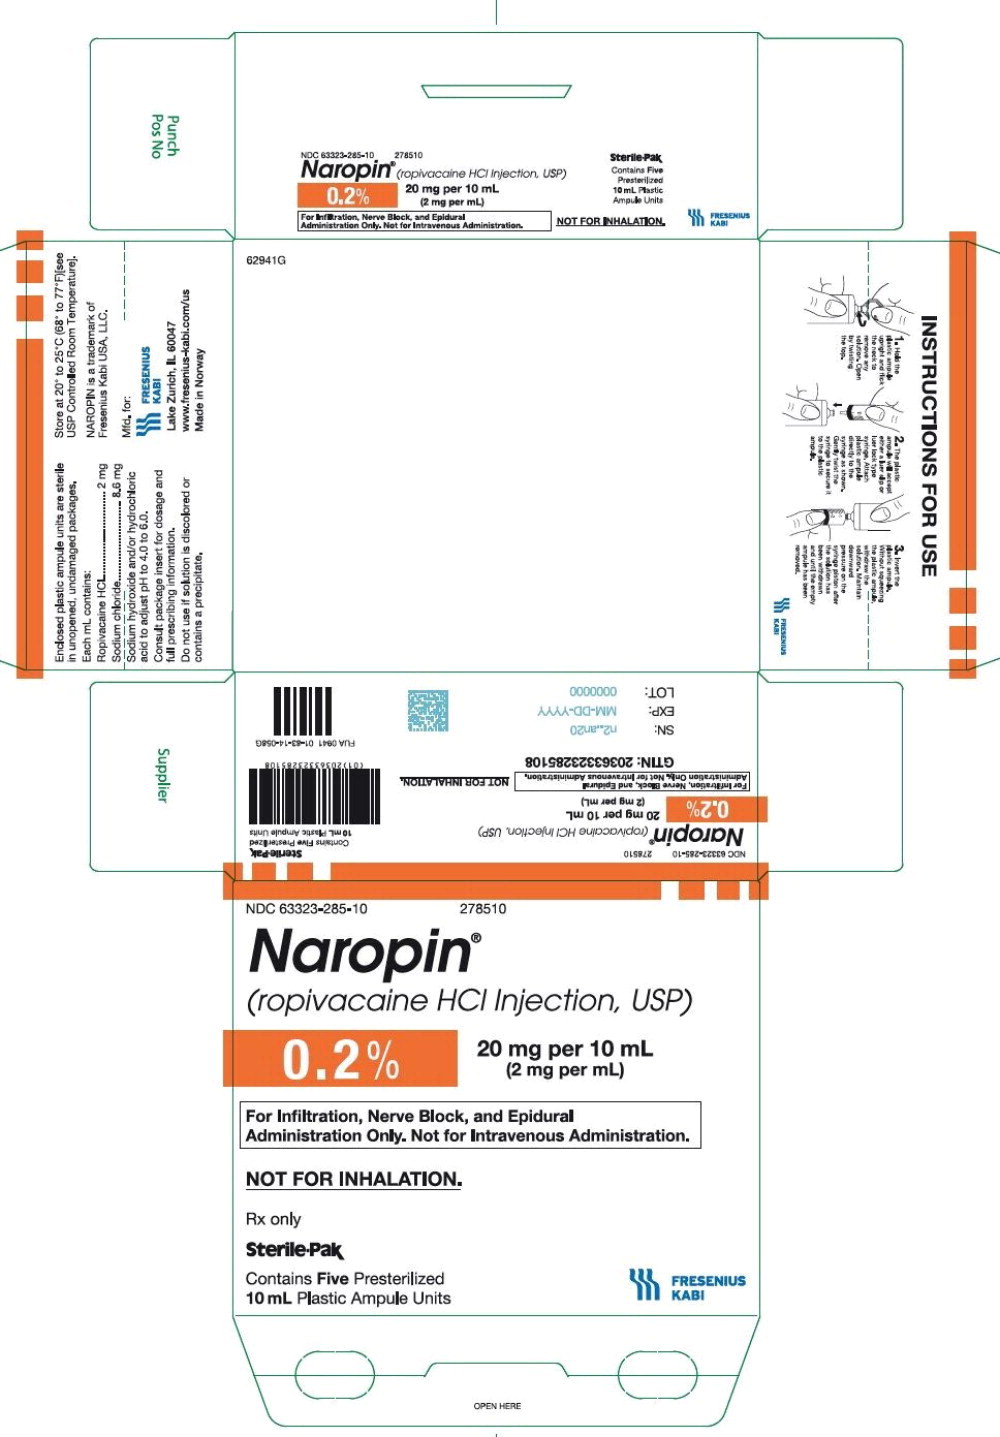 PACKAGE LABEL - PRINCIPAL DISPLAY PANEL - Naropin 10 mL Ampule Carton Label
